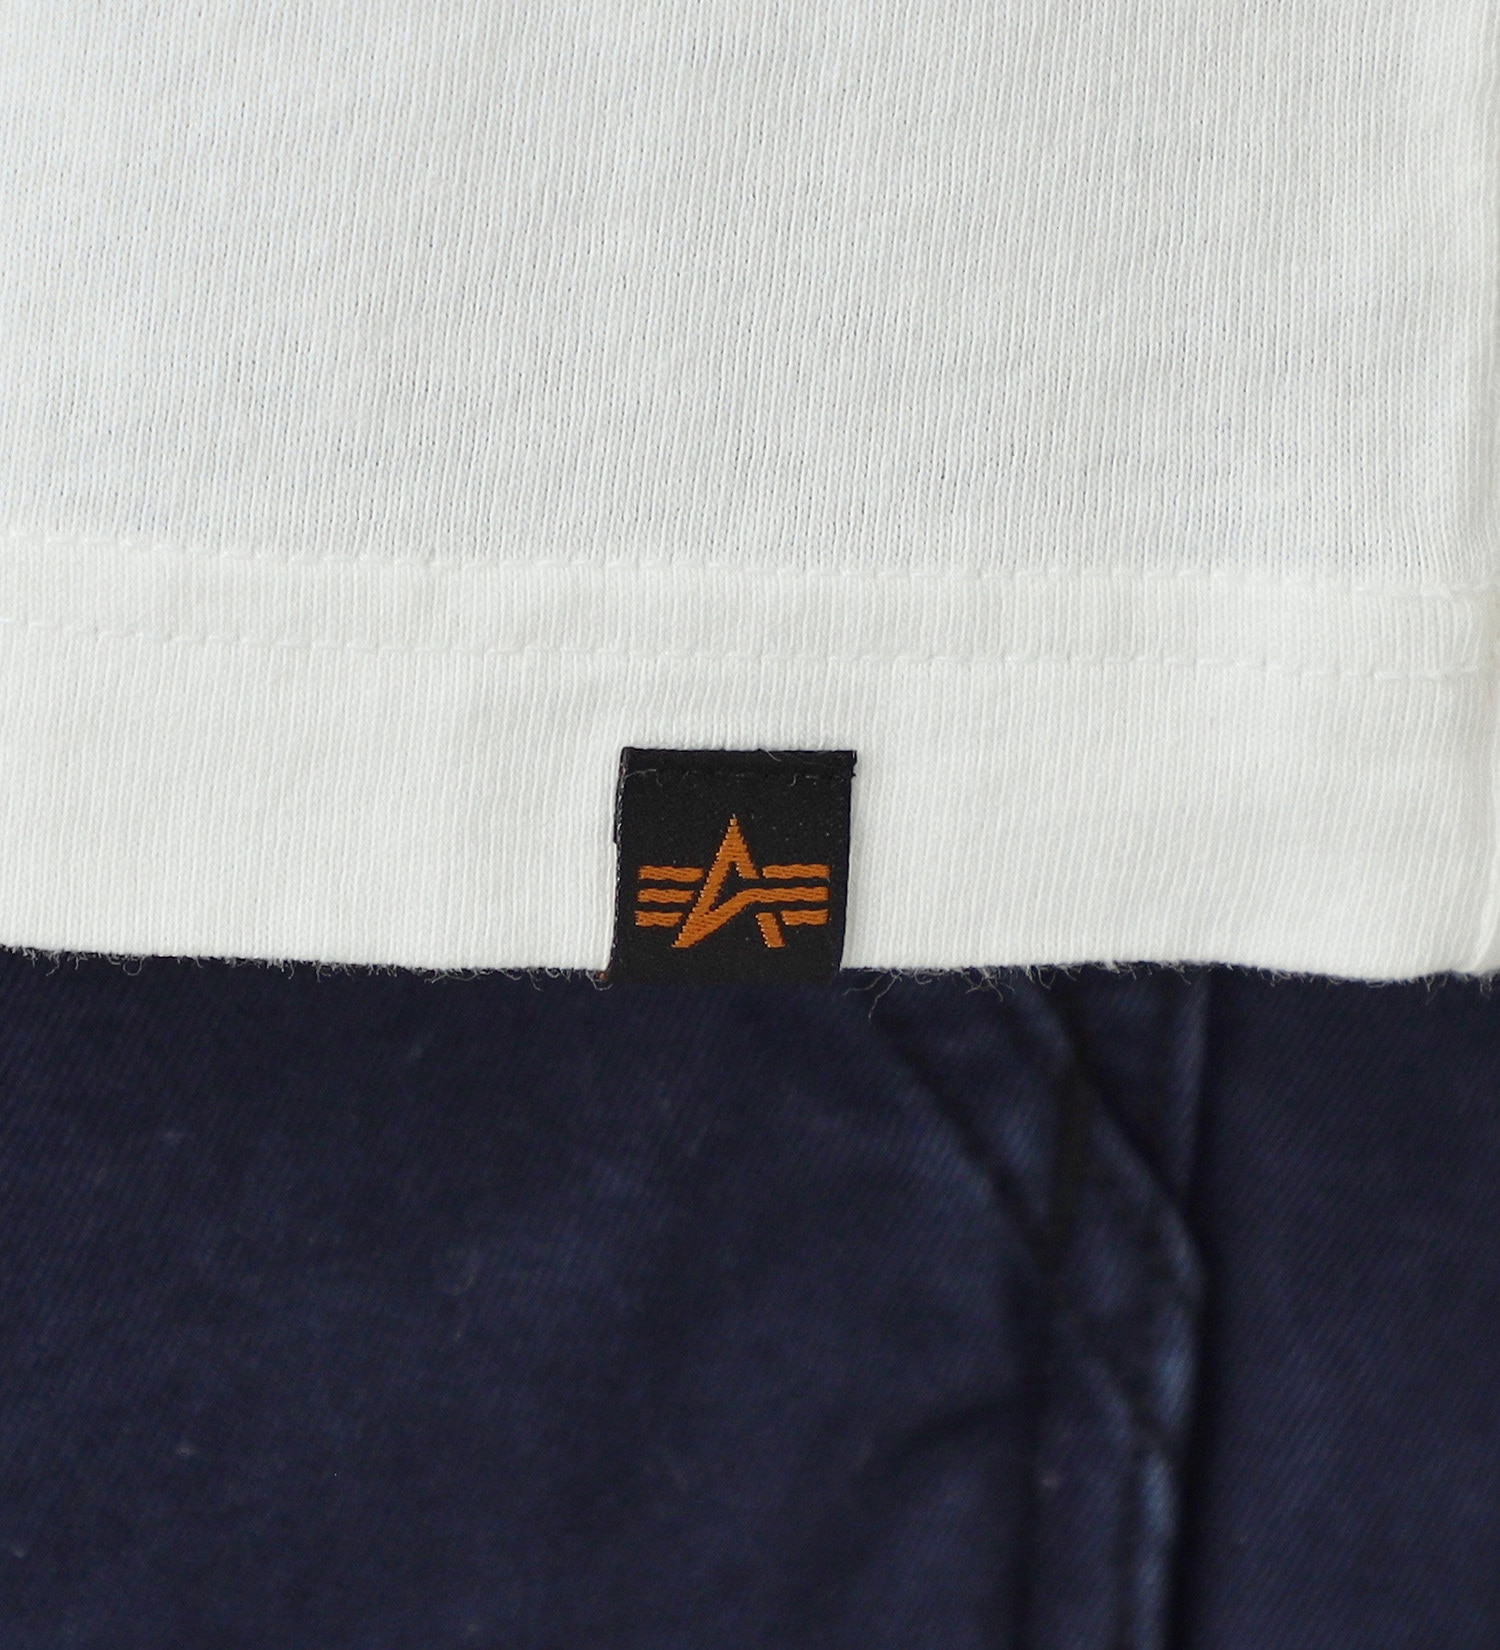 ALPHA(アルファ)の【GW SALE】Aマークプリント 長袖Tシャツ(ウッドランドカモ柄)|トップス/Tシャツ/カットソー/メンズ|ホワイト